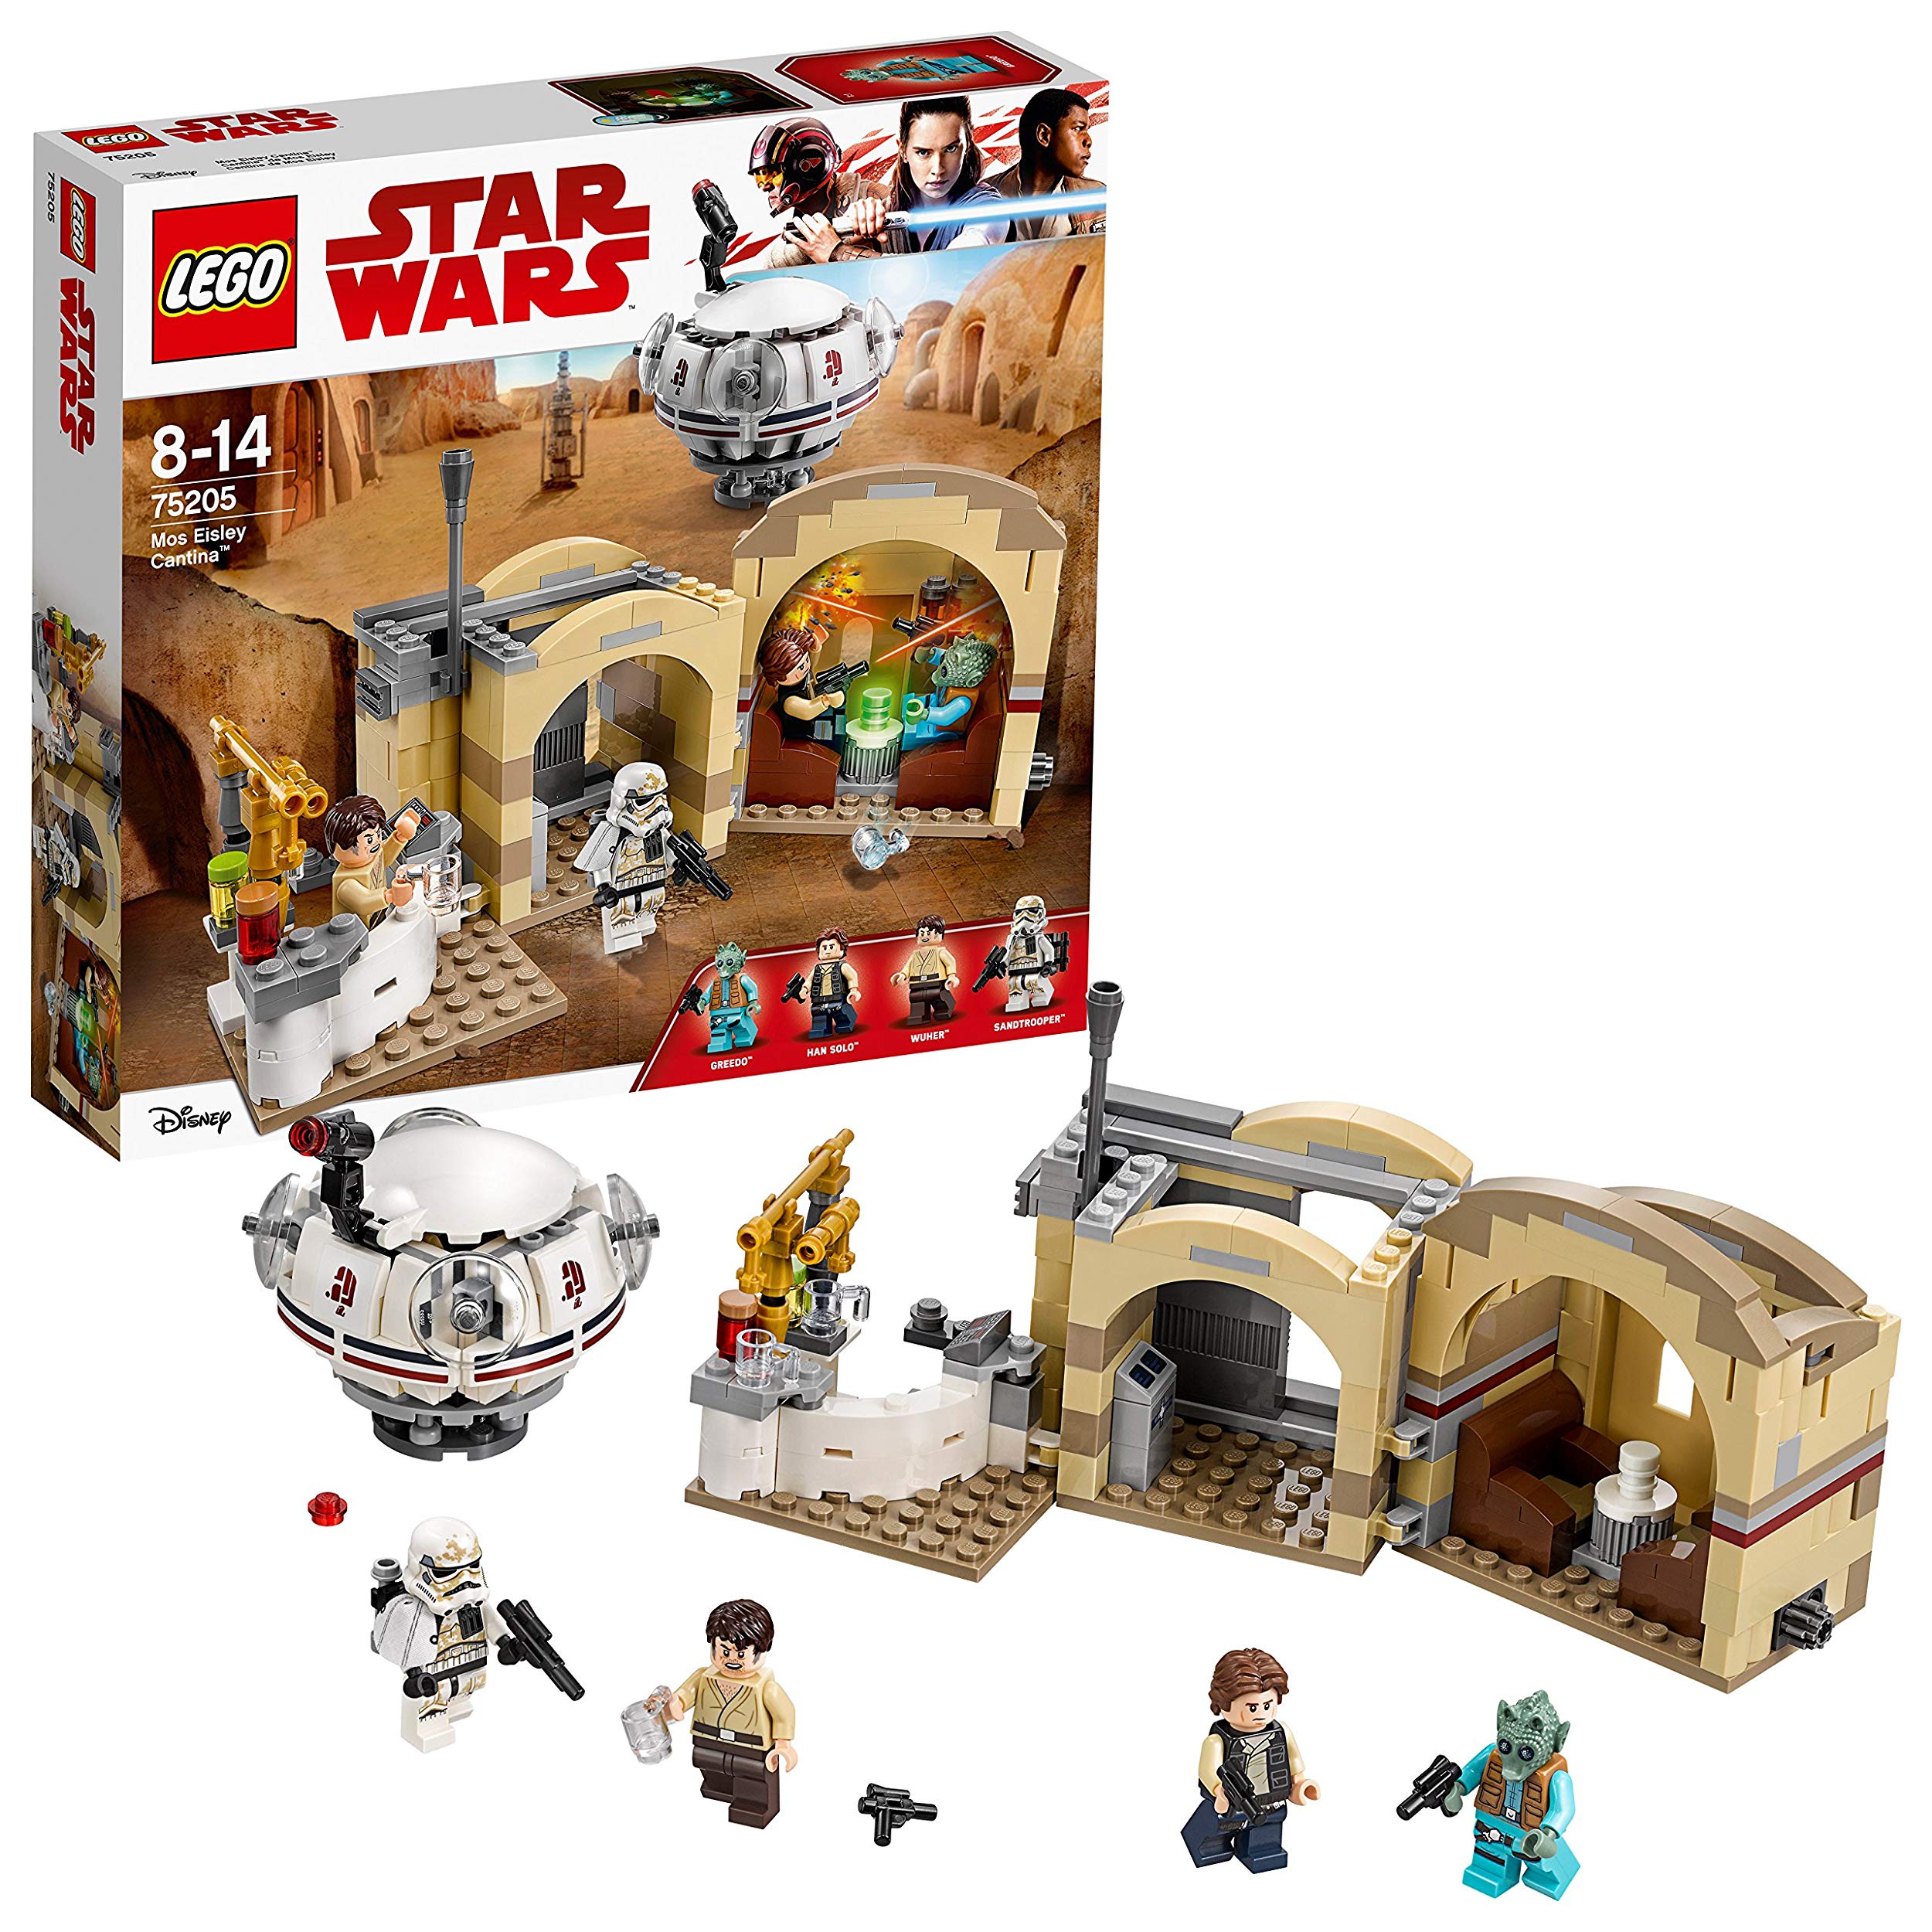 Lego Star Wars Mos Eisley Cantinatm